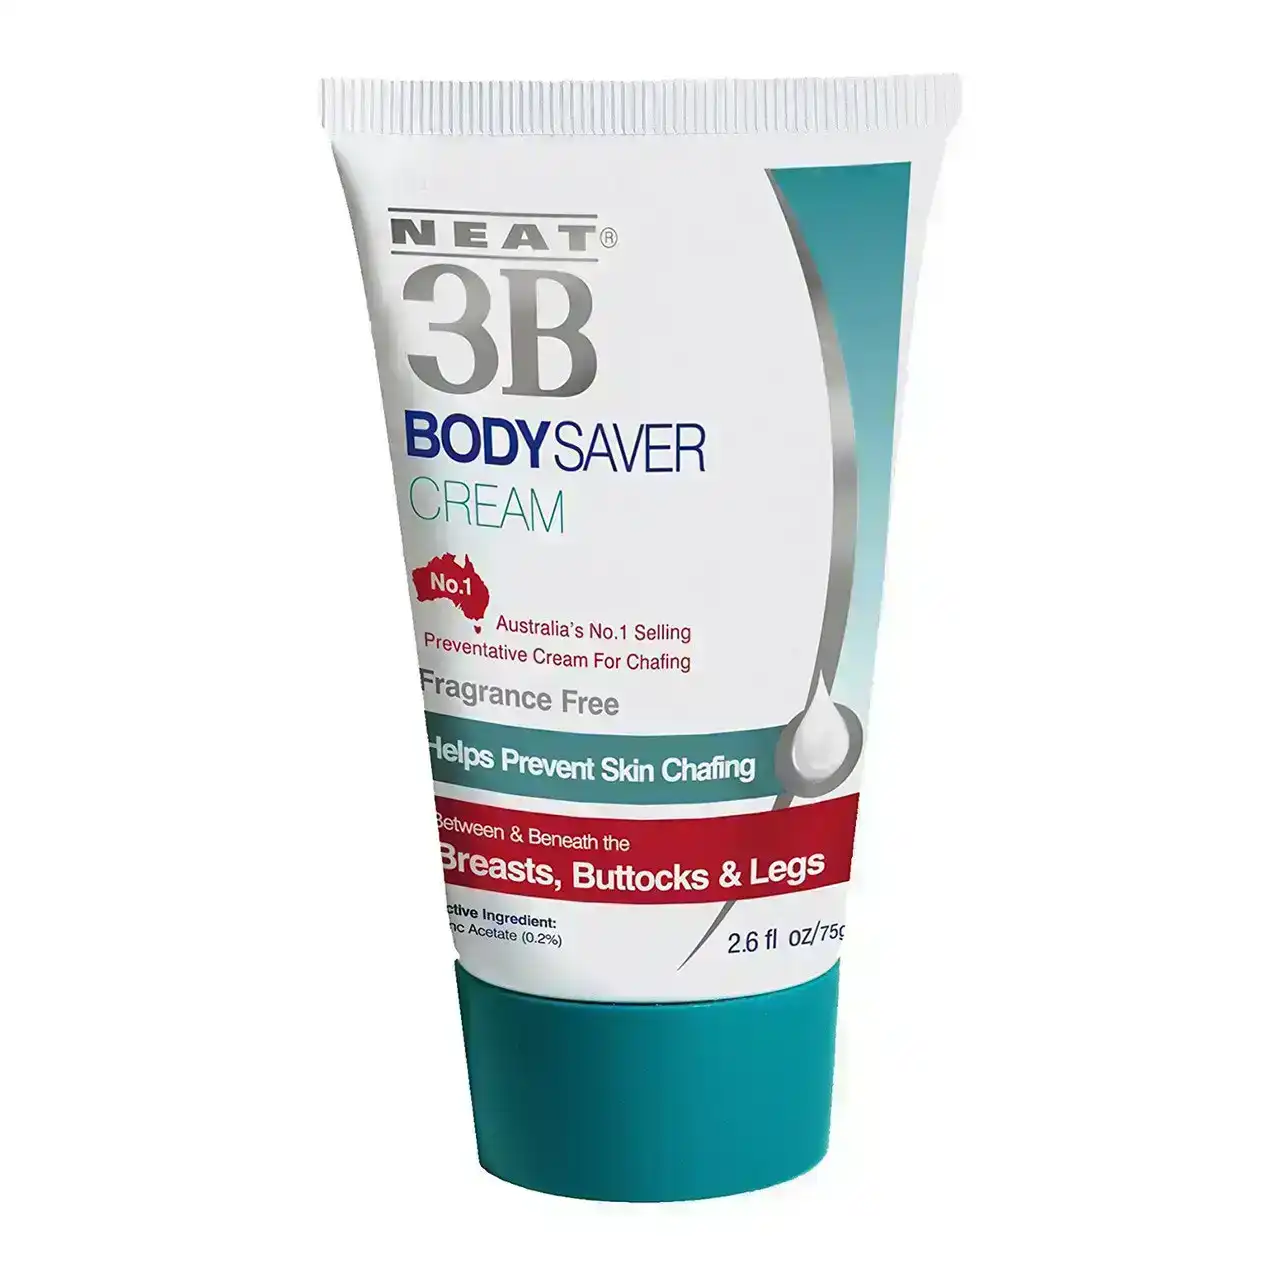 NEAT 3B Body Saver Cream 75g